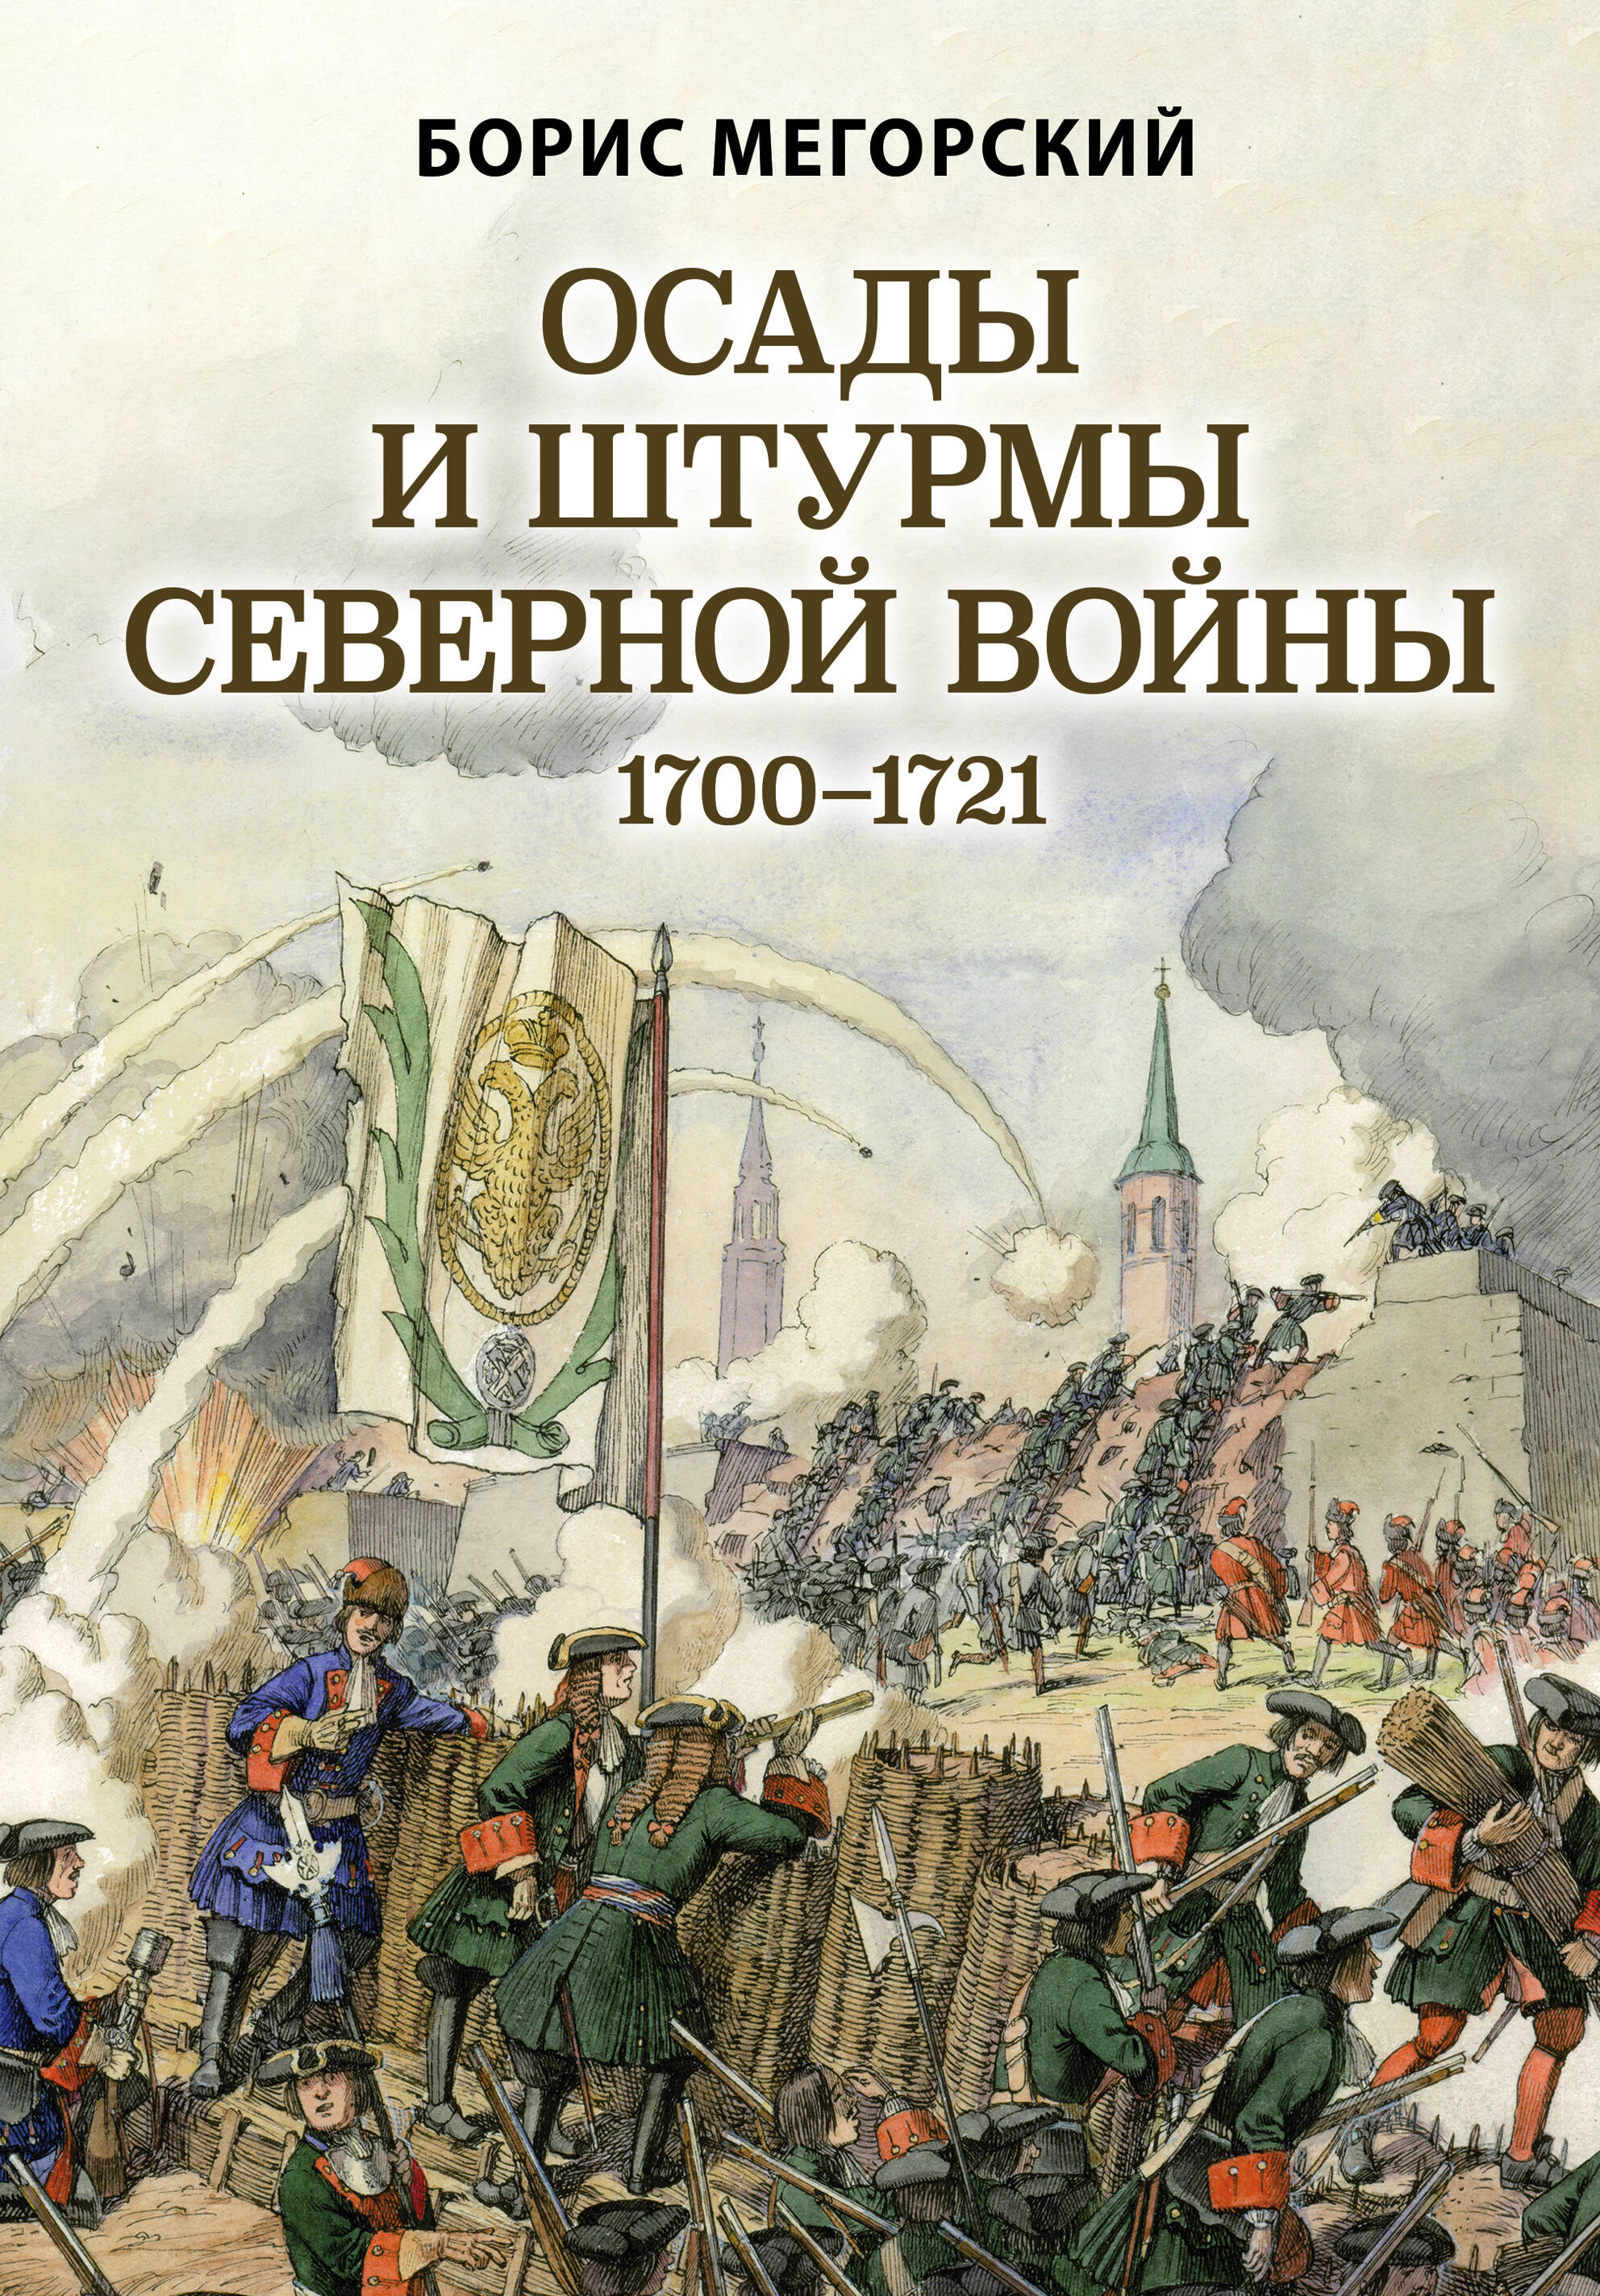 Мегорский Борис - Осады и штурмы Северной войны 1700-1721 гг.